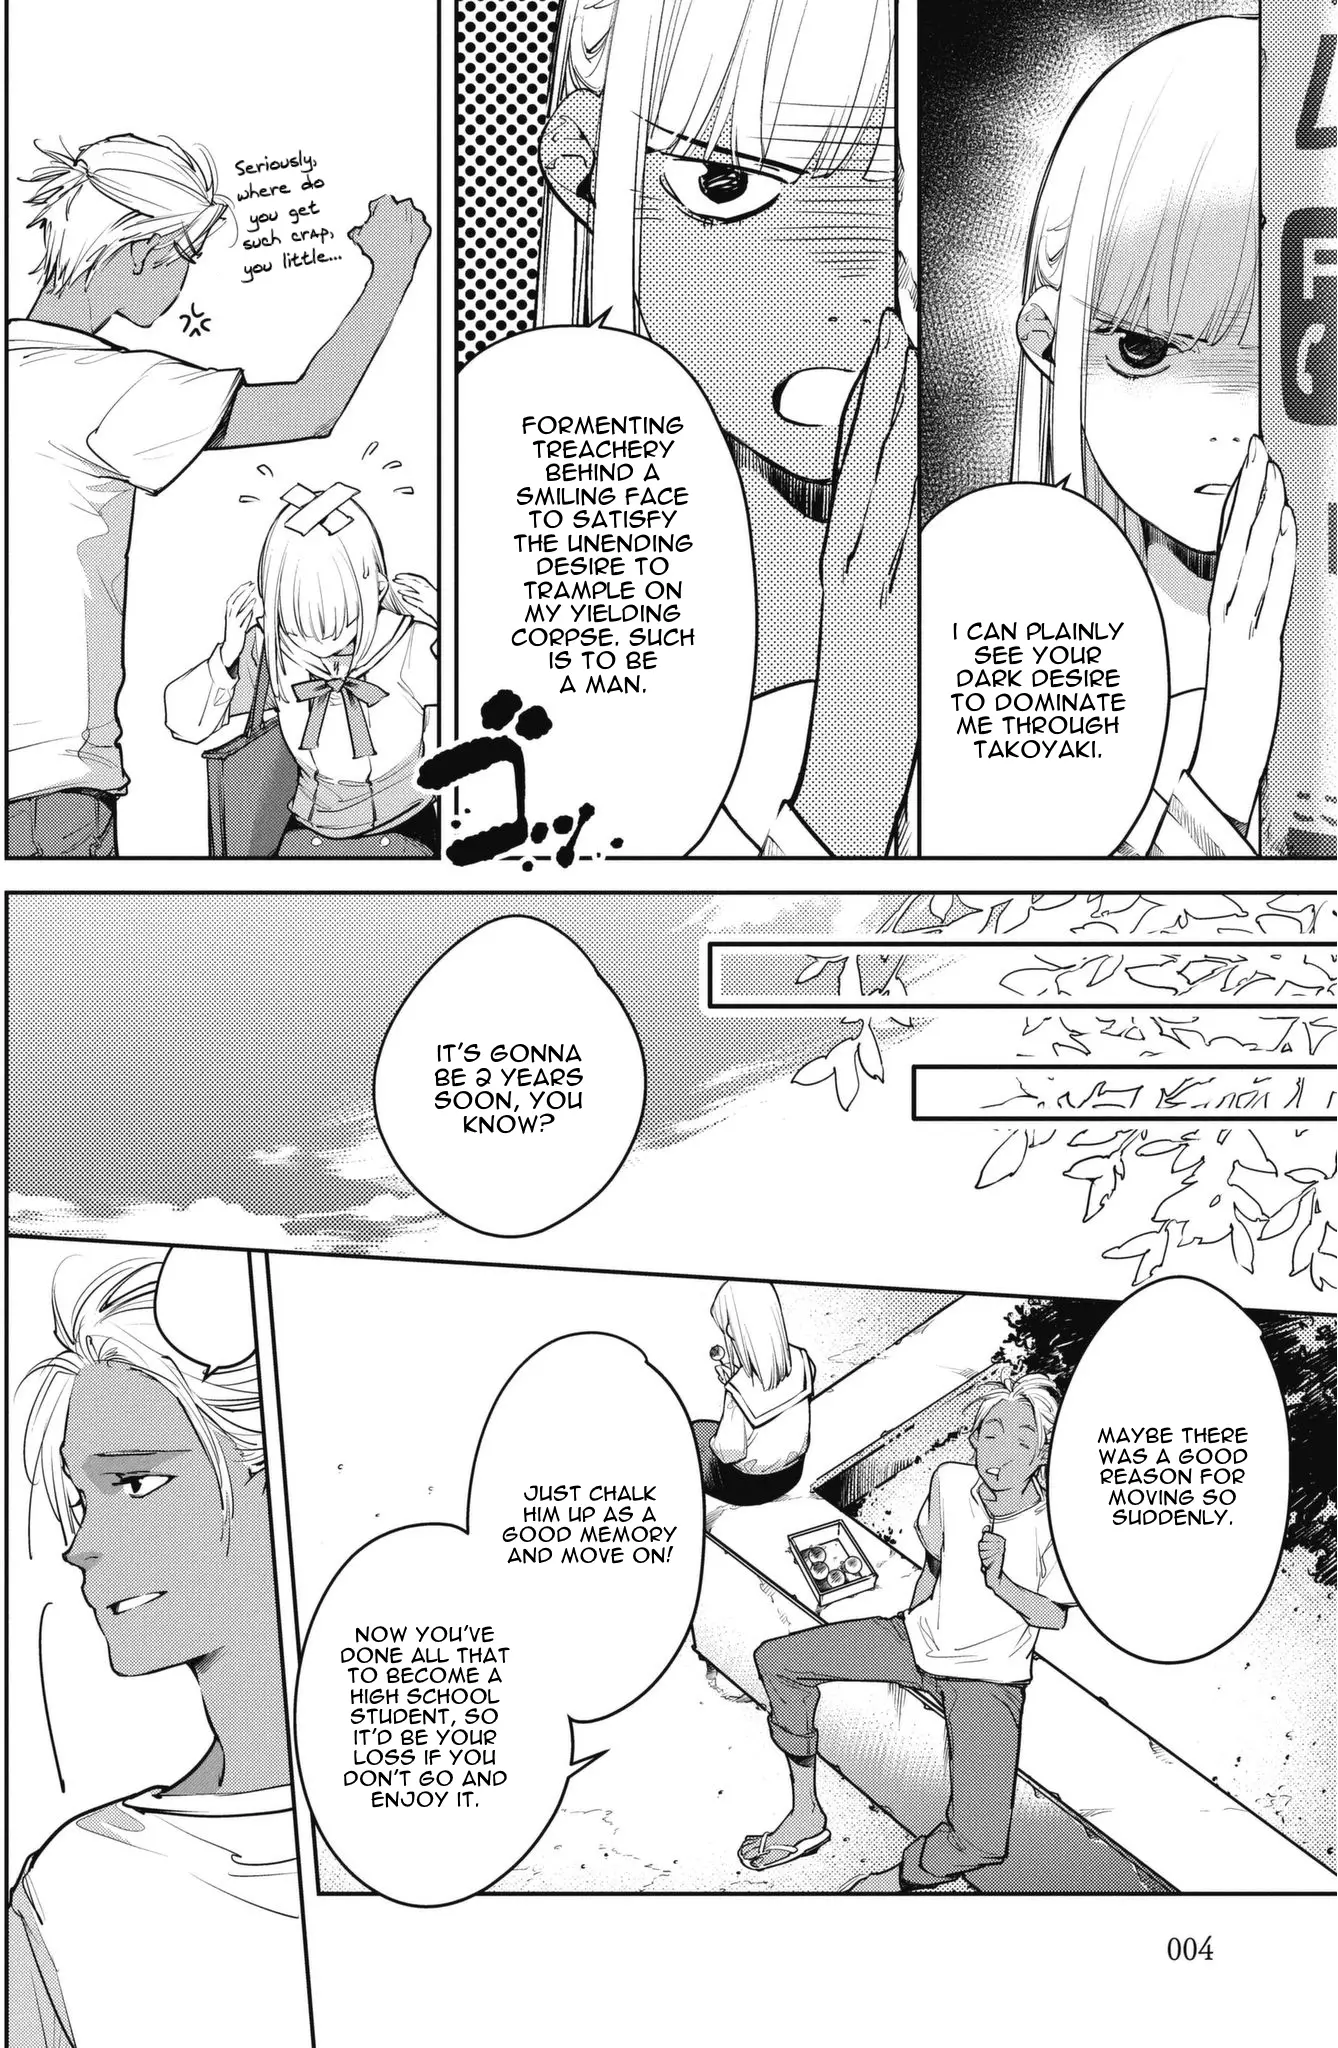 Okashiratsuki - 7 page 6